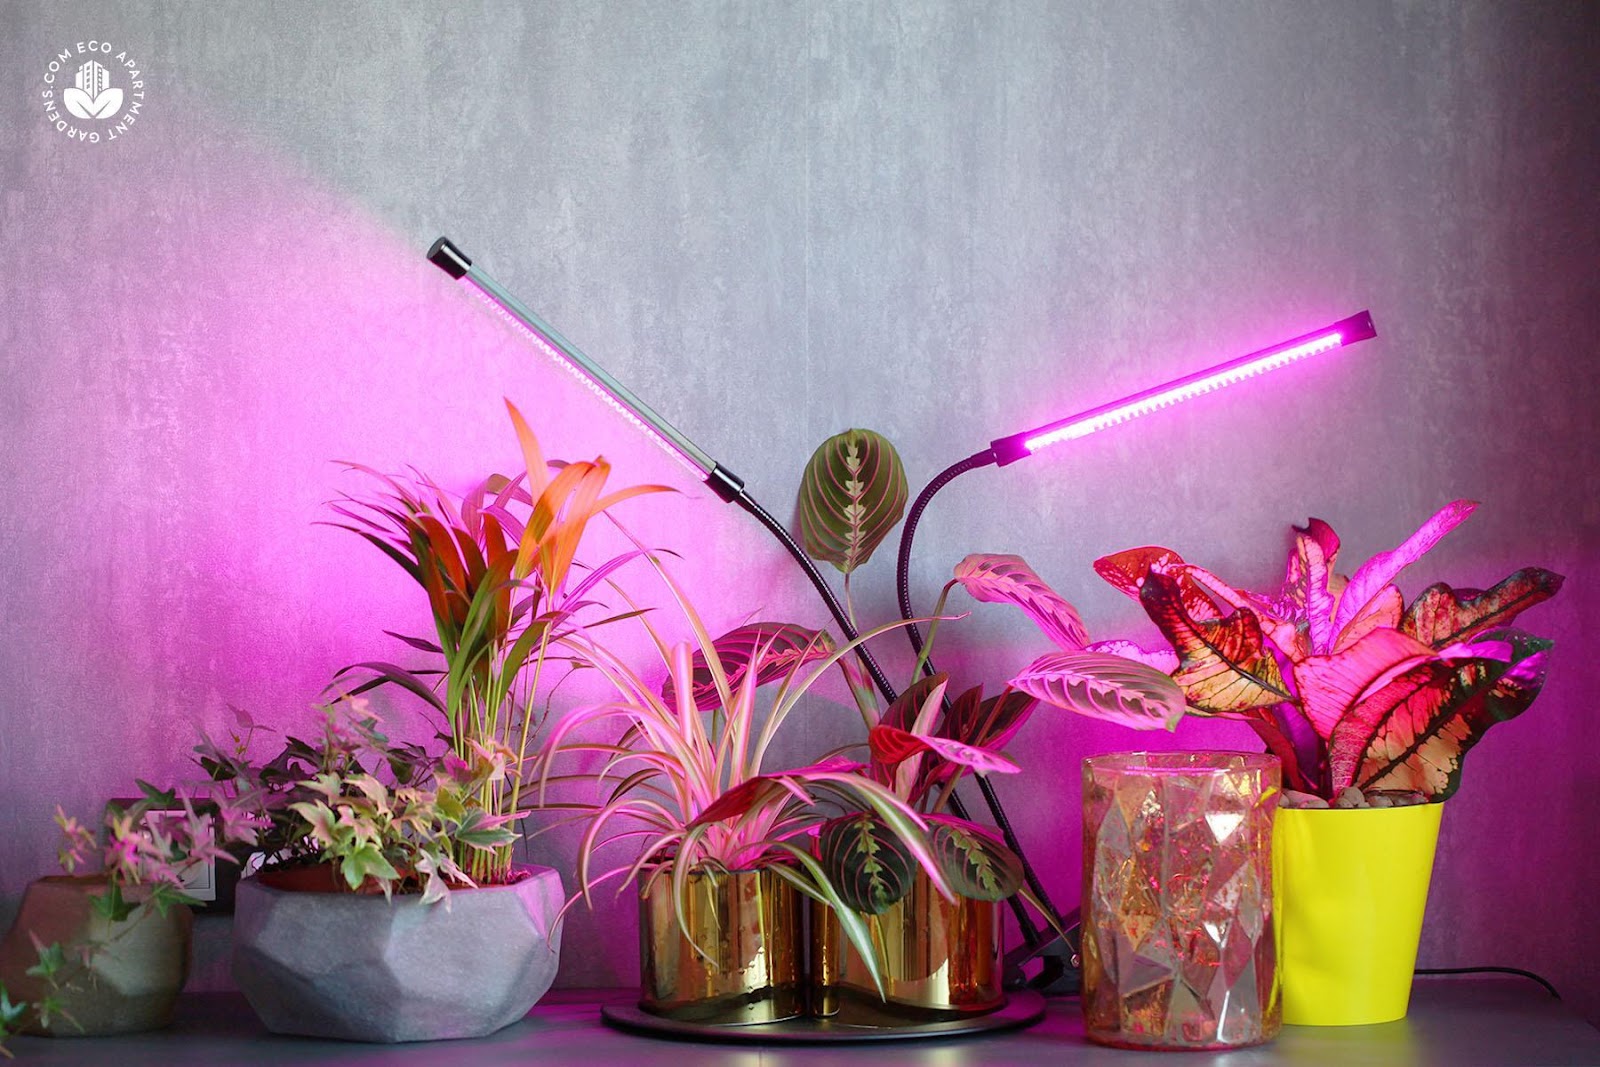 Full Spectrum LED Grow Lights for Plants